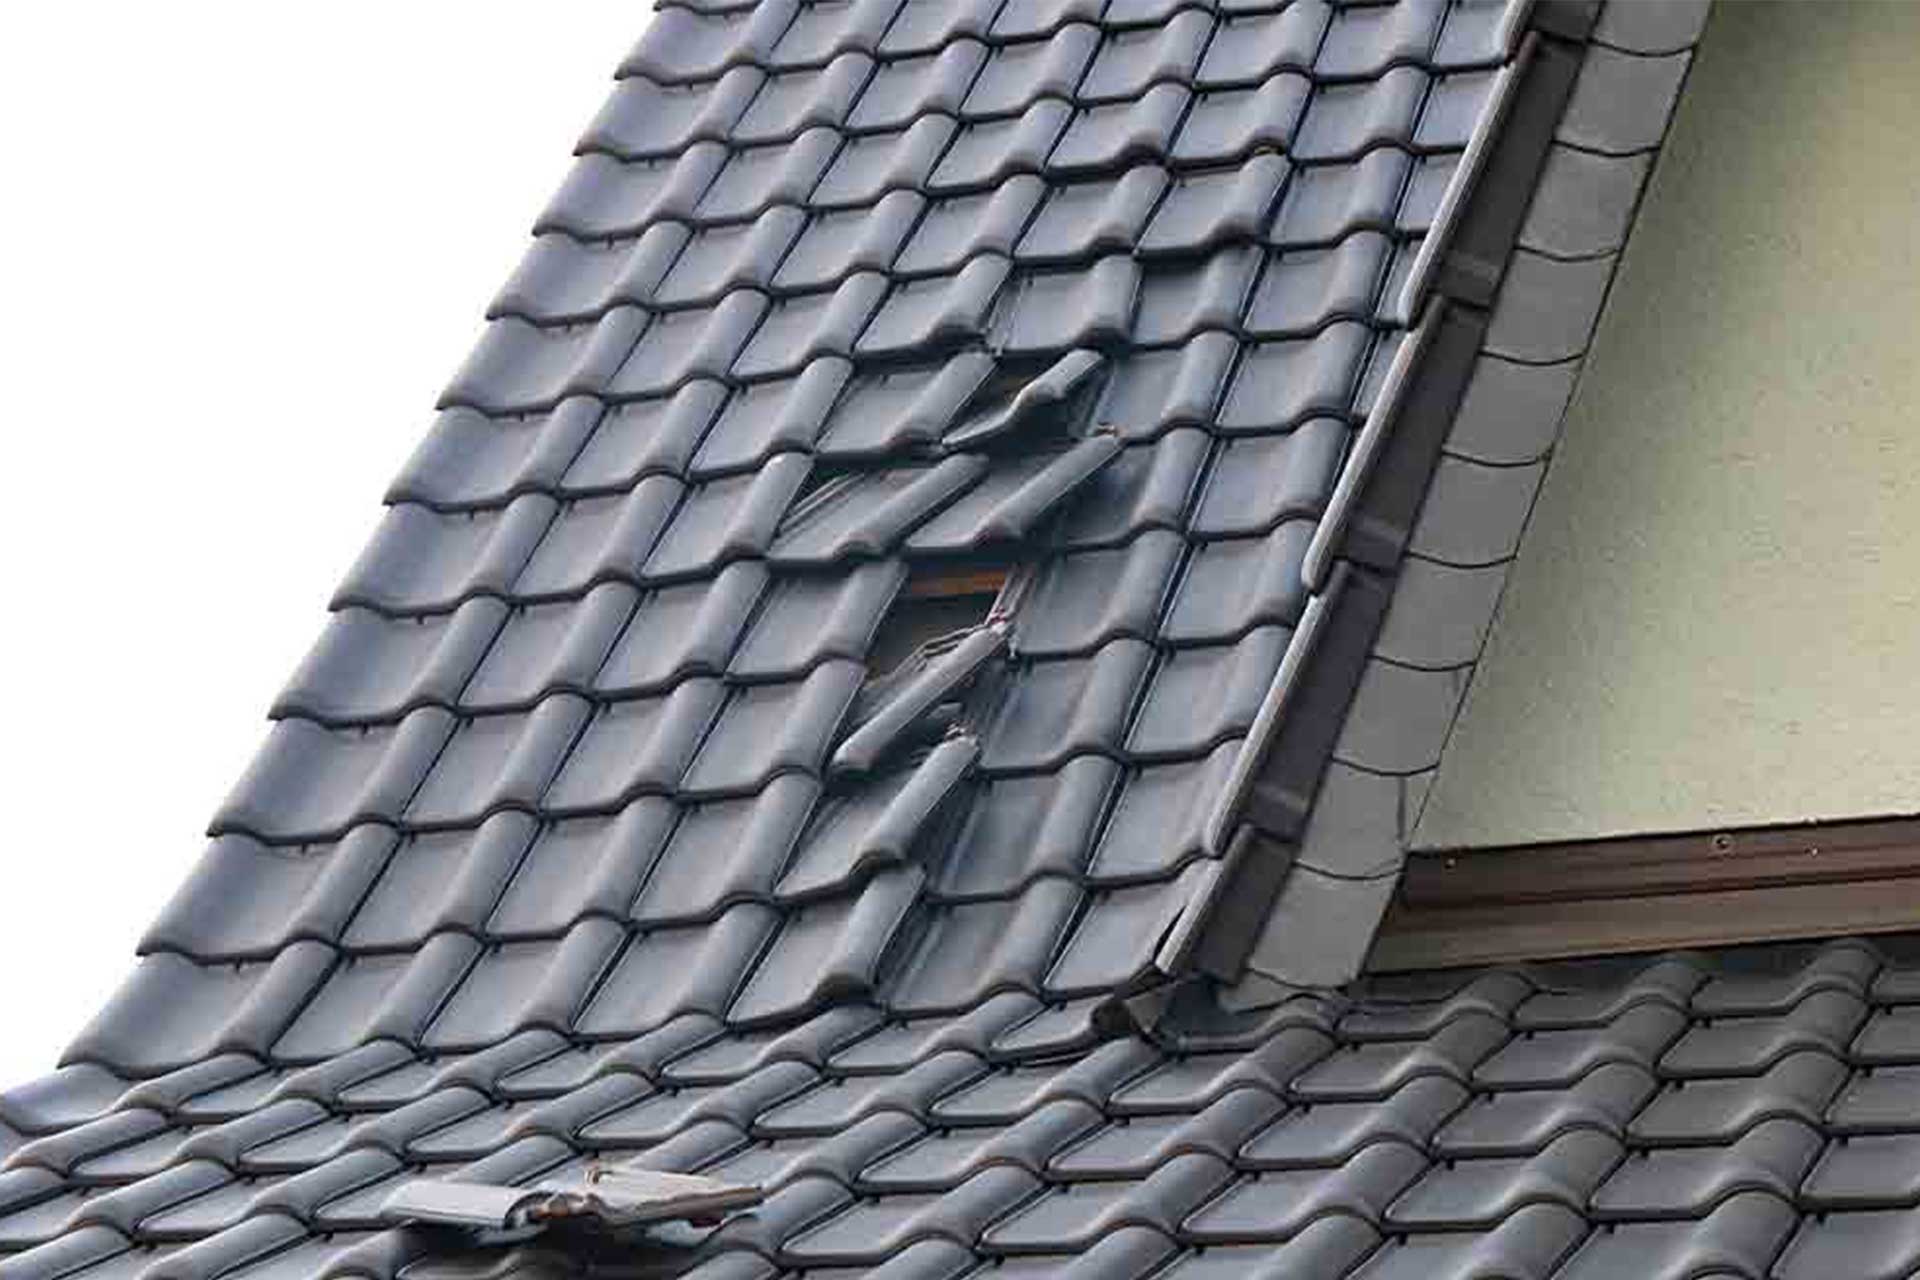 Roof repair cost